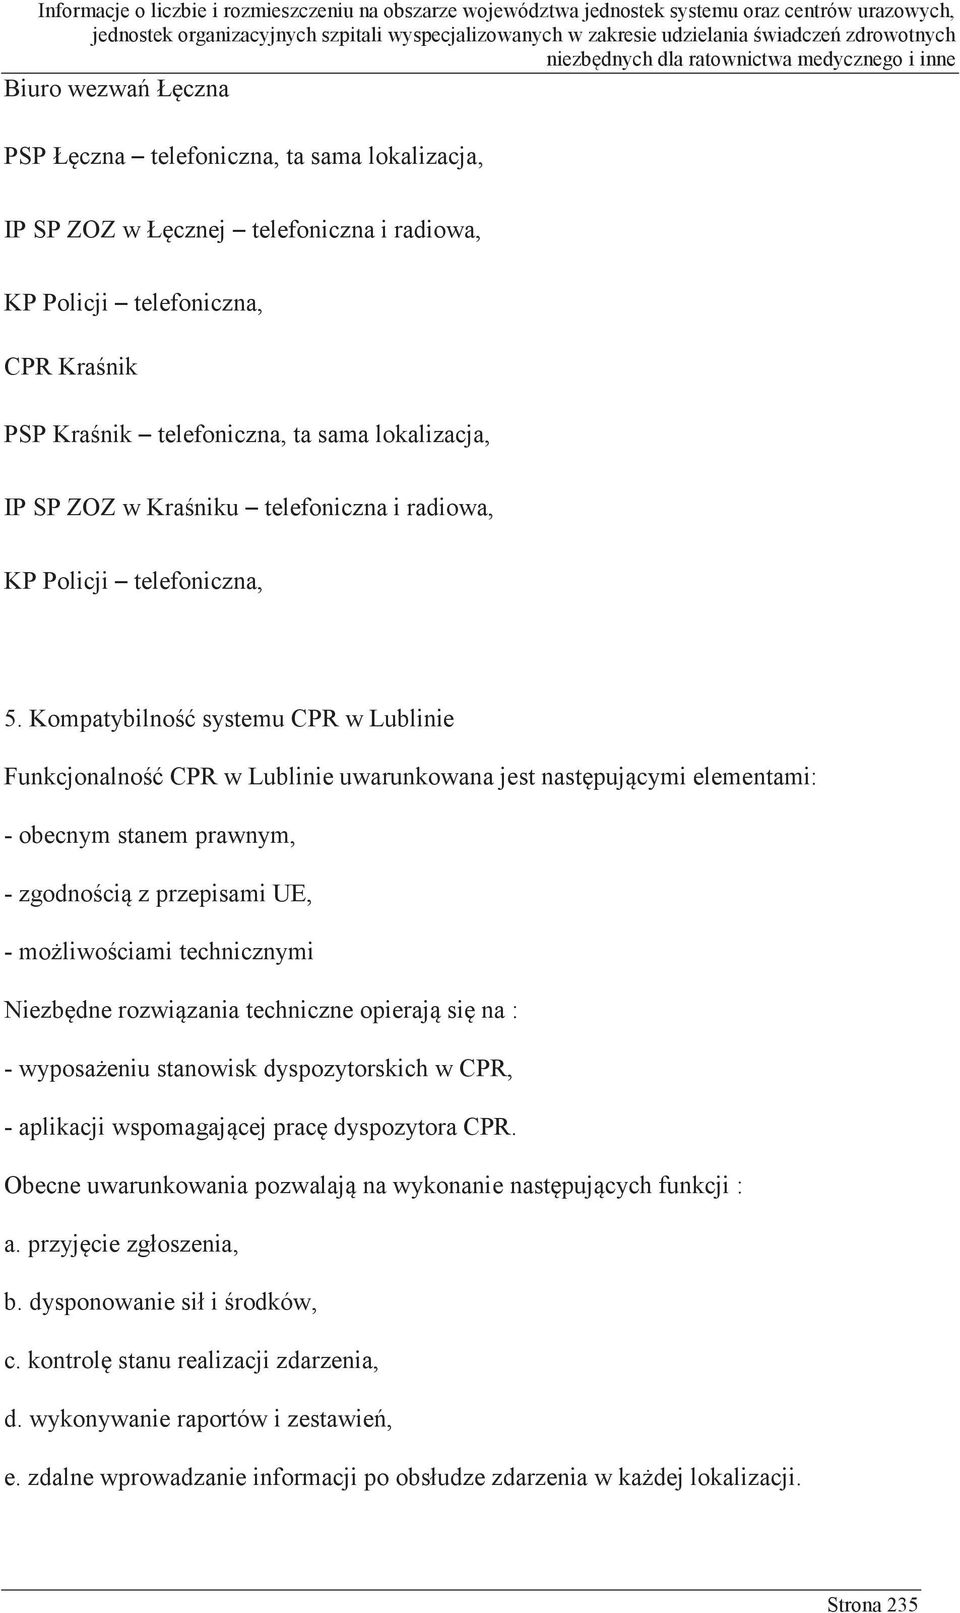 Kompatybilność systemu CPR w Lublinie Funkcjonalność CPR w Lublinie uwarunkowana jest następującymi elementami: - obecnym stanem prawnym, - zgodnością z przepisami UE, - możliwościami technicznymi